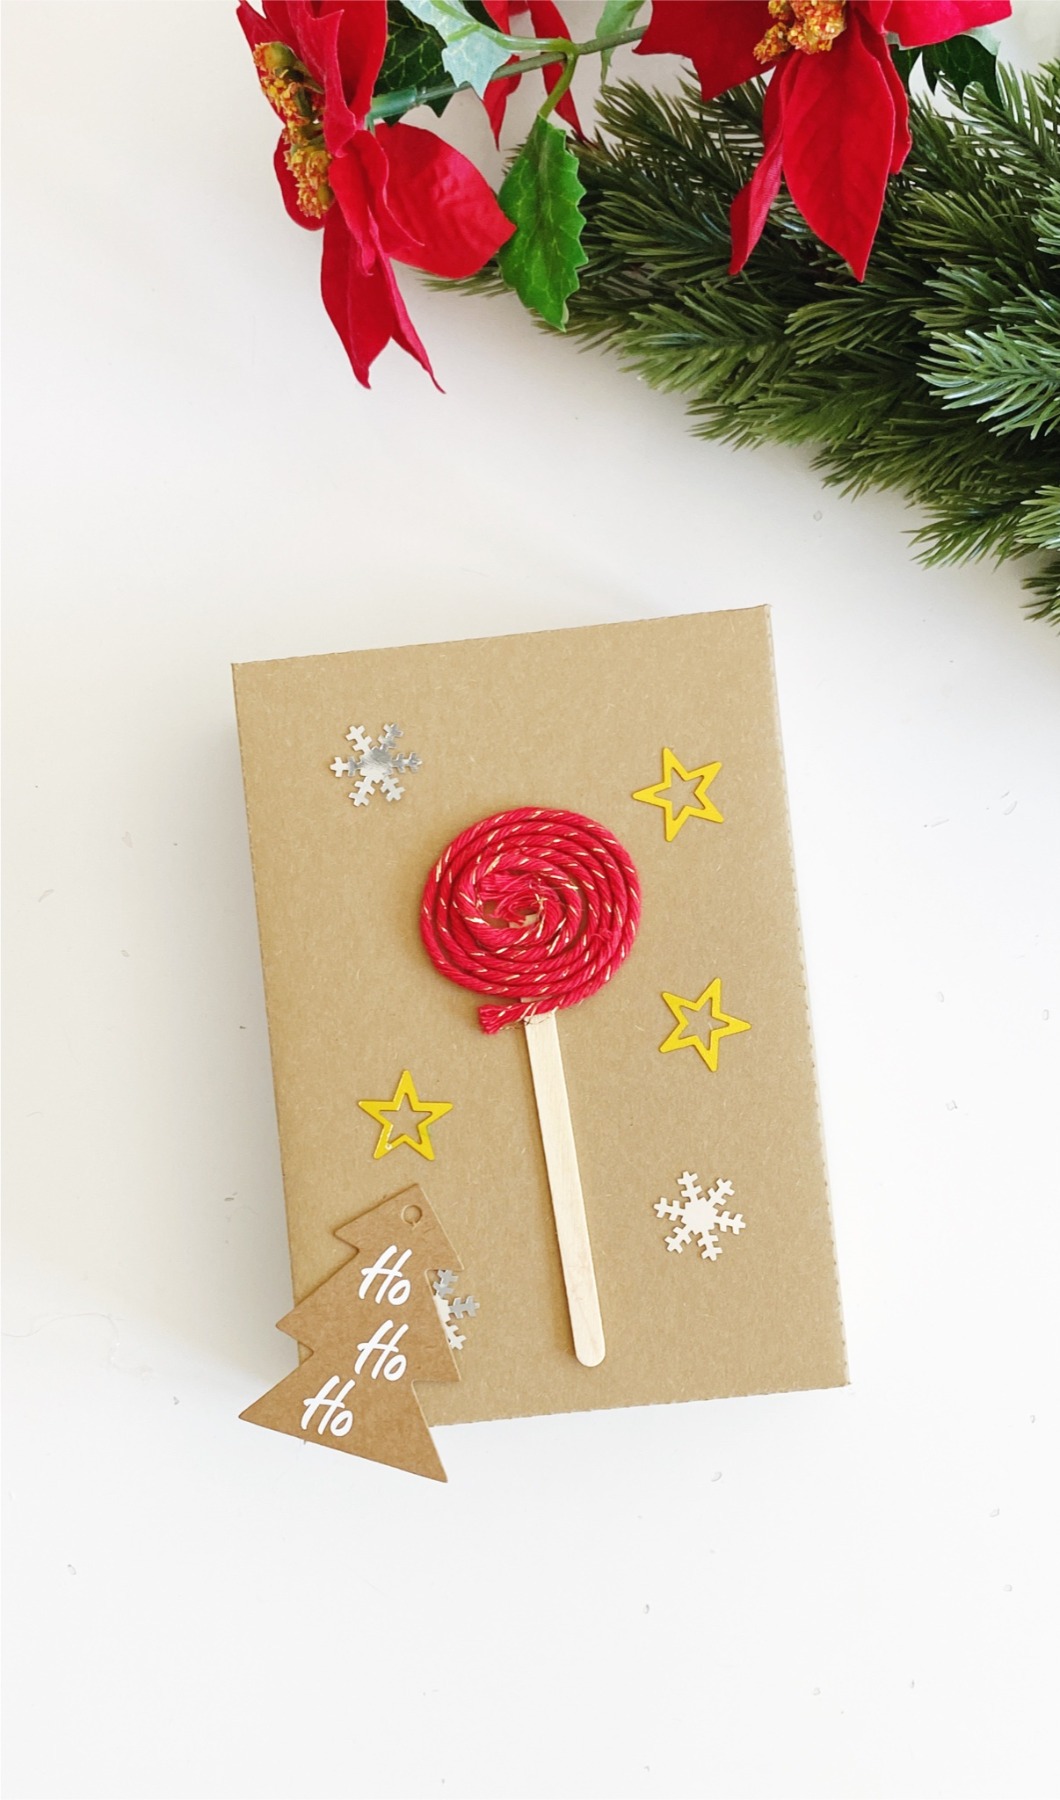 Bastelset für Weihnachten, DIY Kit Weihnachtskarten basteln, Weihnachtsgeschenke verpacken Ideen 21